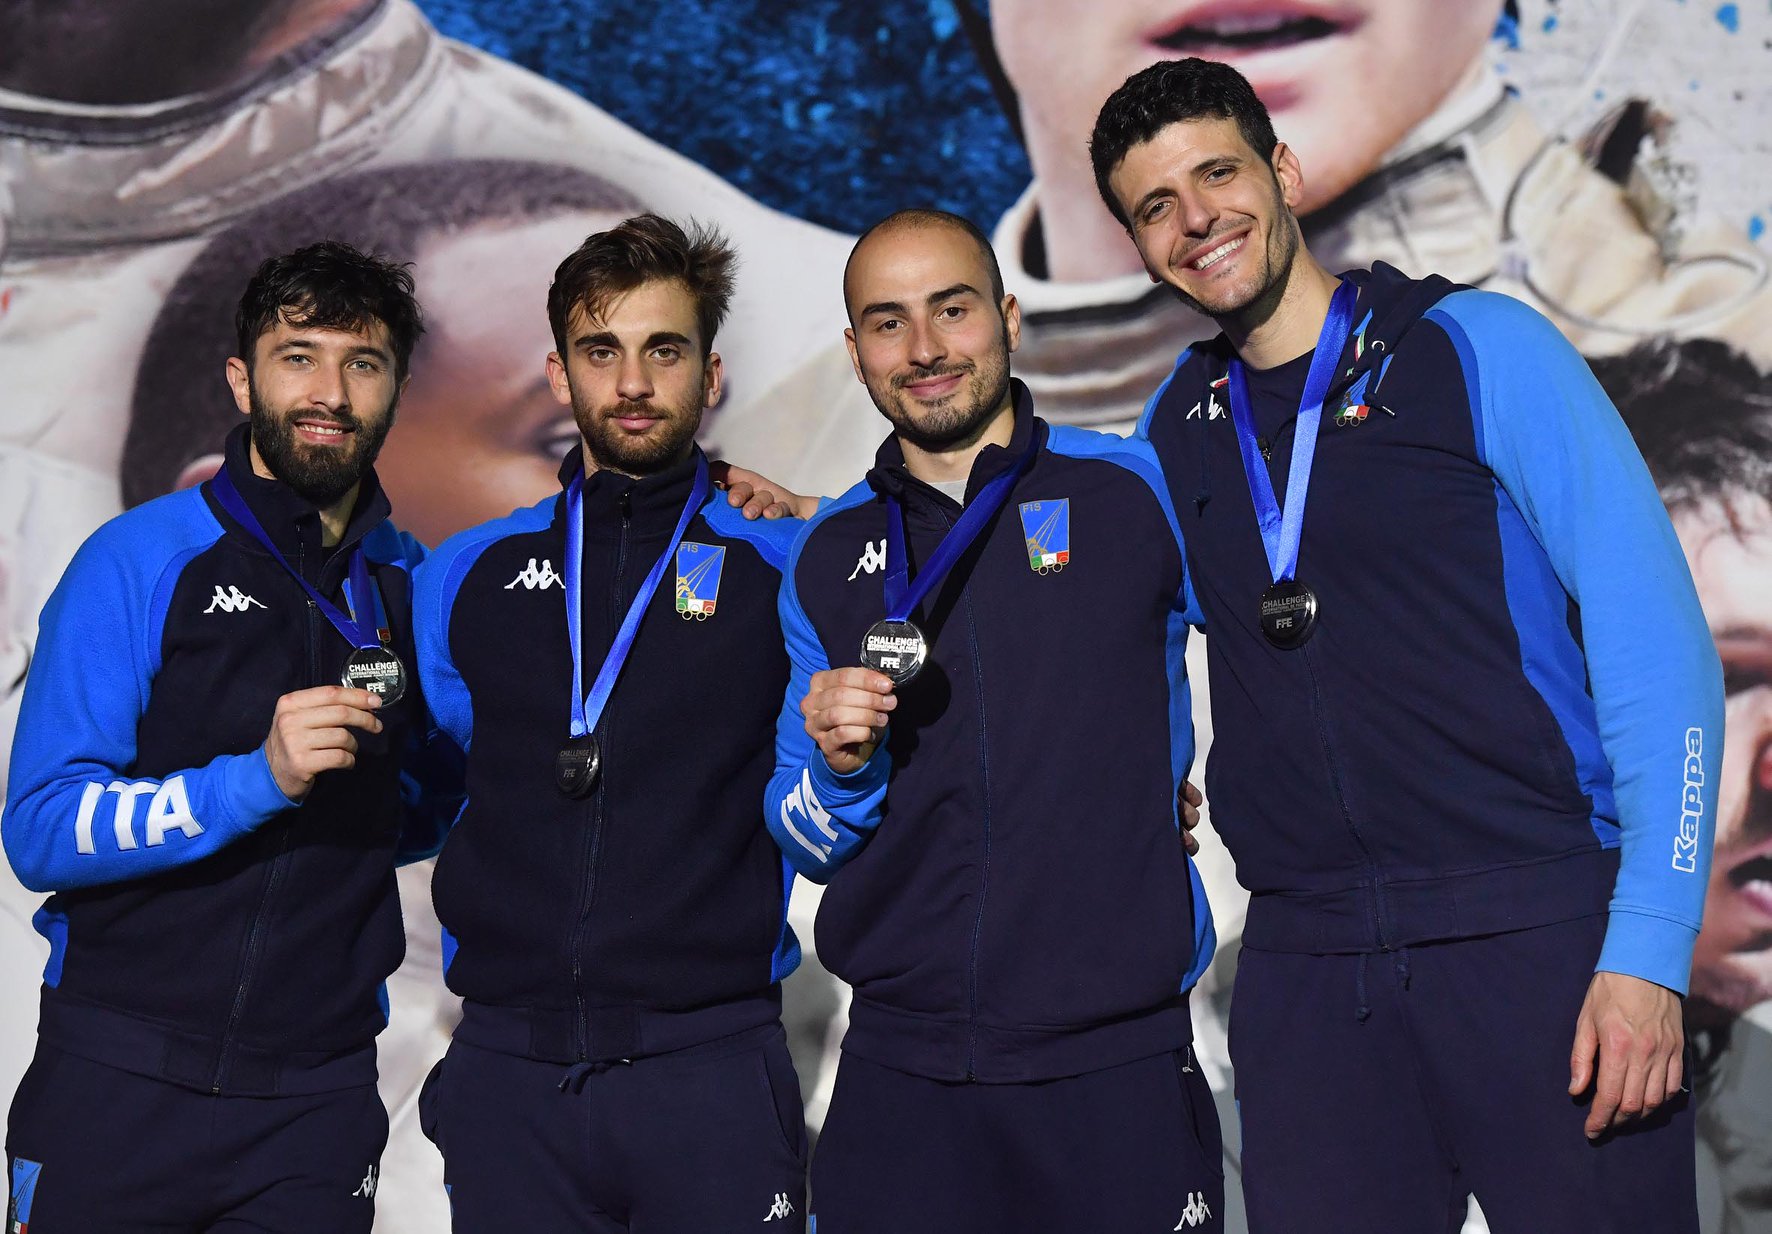 Coppa del Mondo: secondi i fiorettisti, 3° posto per le azzurre e Foietta (spada), al 1° podio in carriera